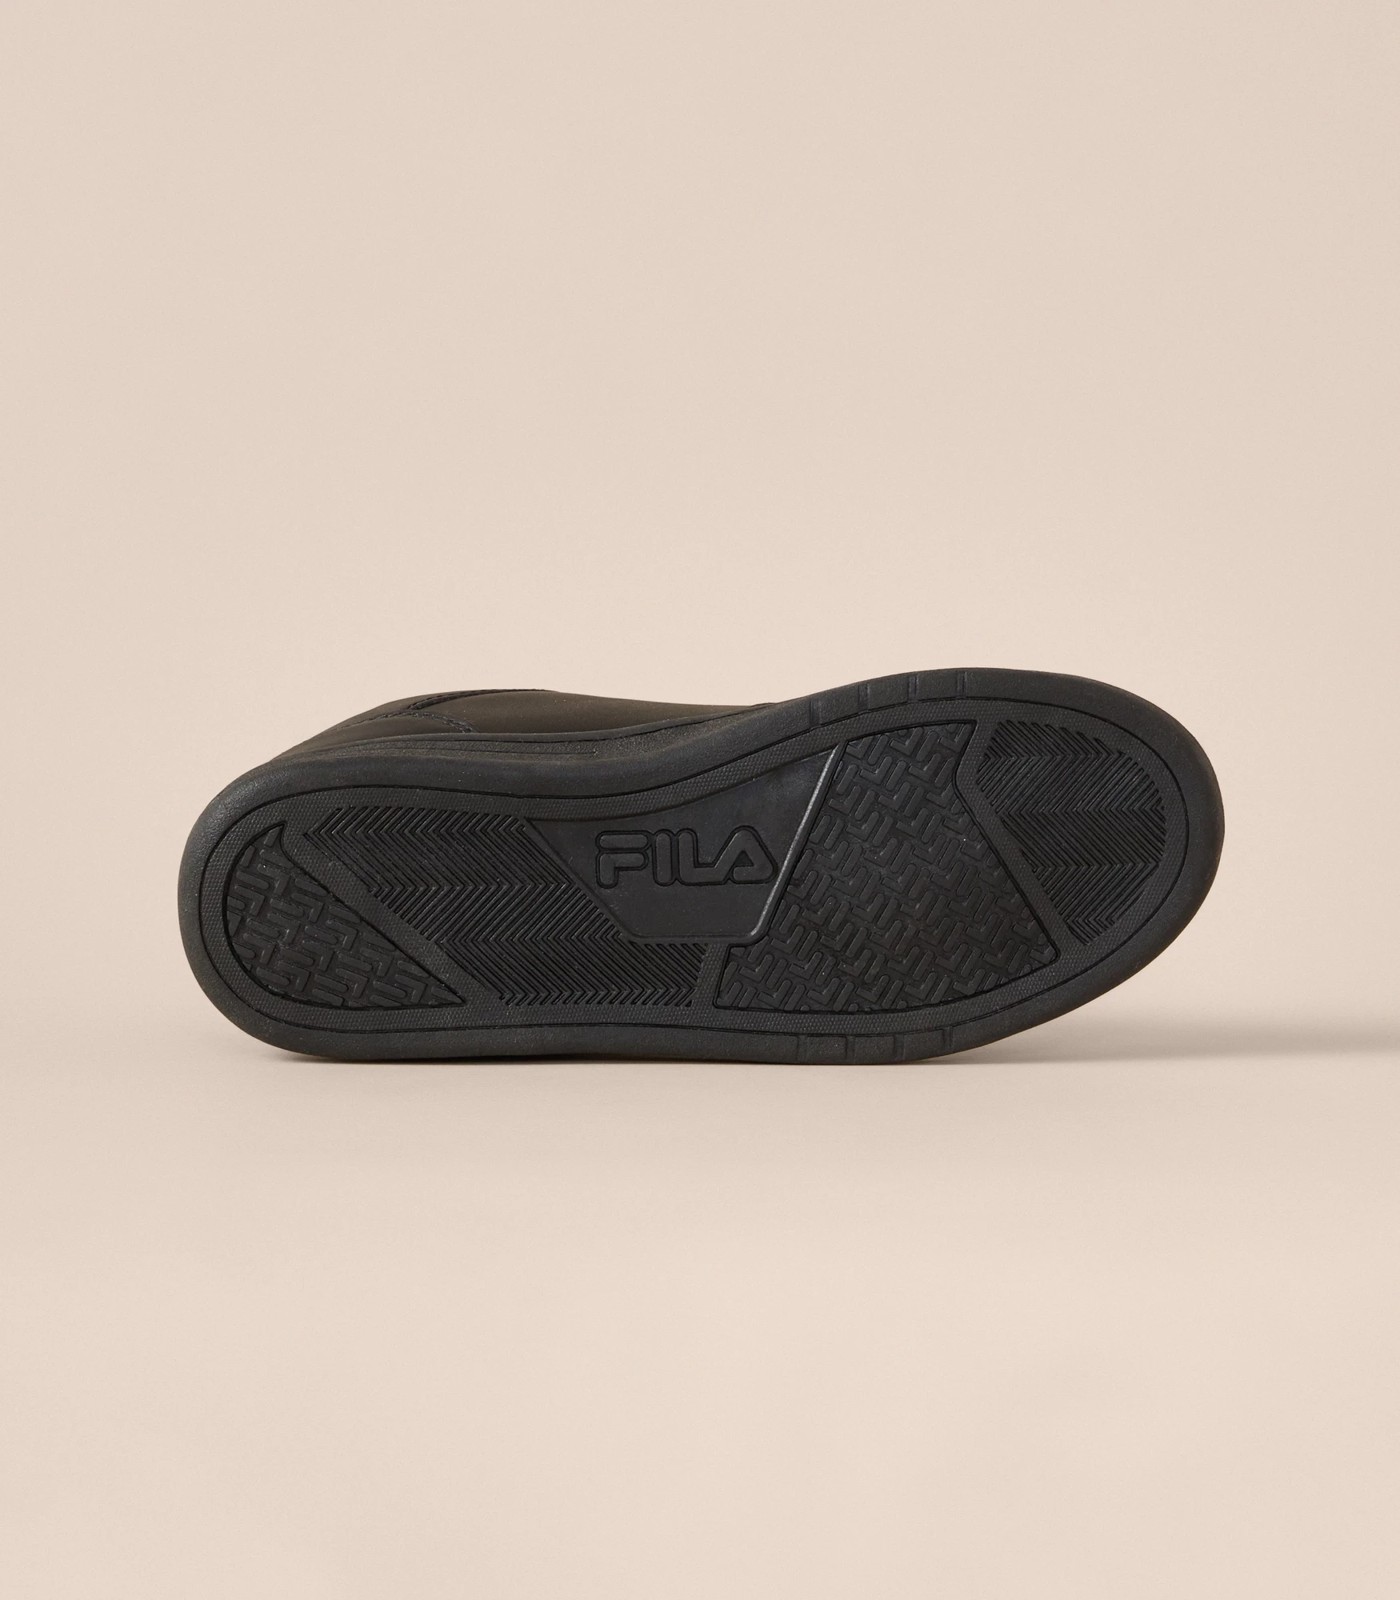 Fila Kids Senior Chiavari Casual Sneakers - Black | Target Australia